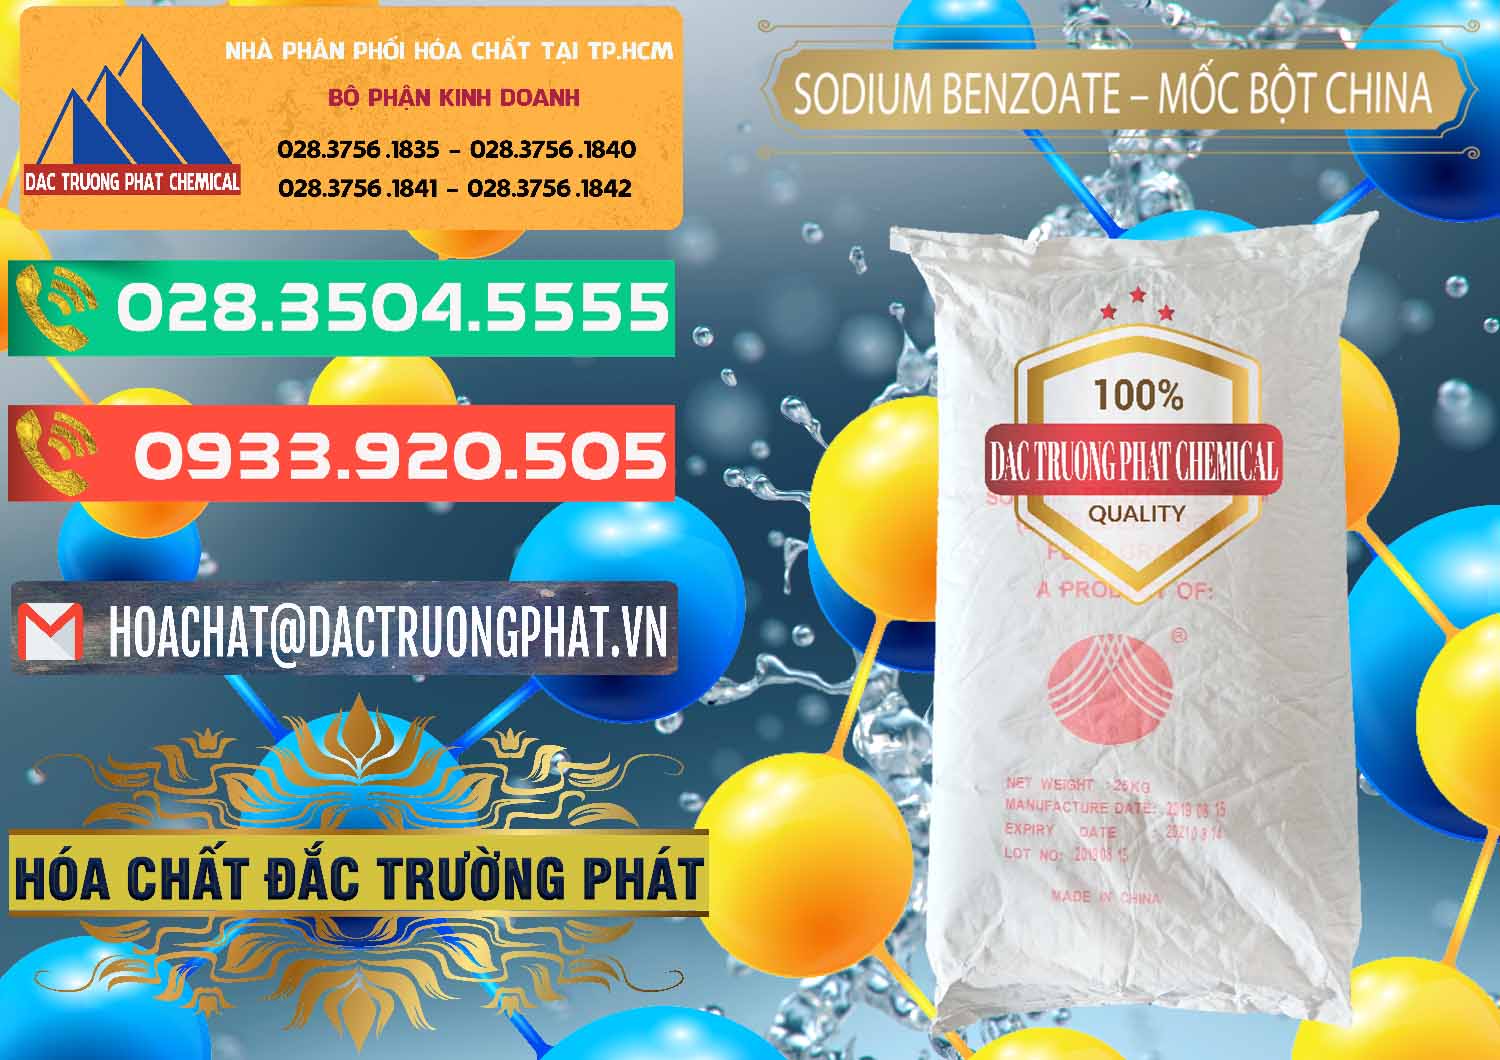 Nơi chuyên cung ứng & bán Sodium Benzoate - Mốc Bột Chữ Cam Food Grade Trung Quốc China - 0135 - Cty phân phối - cung cấp hóa chất tại TP.HCM - congtyhoachat.com.vn